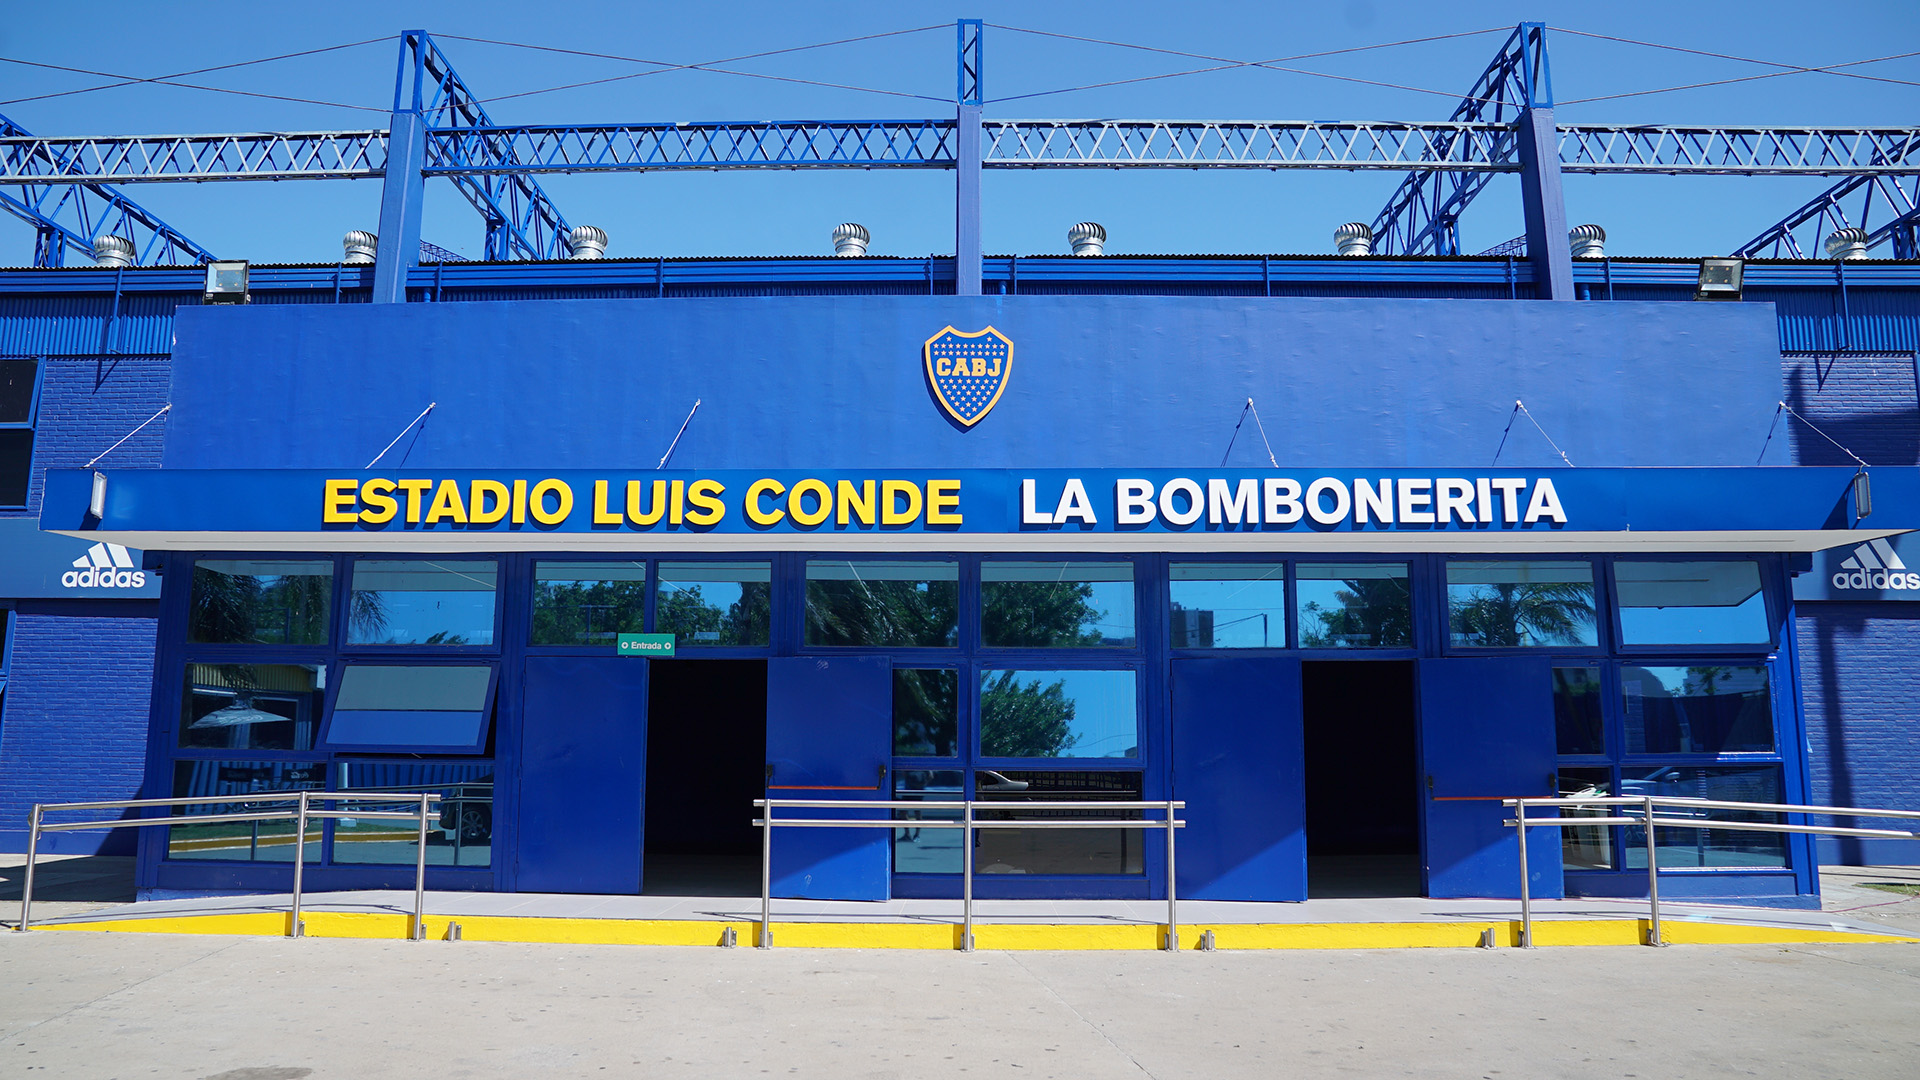 El estadio Luis Conde, renovado por completo (Foto: Alejandro Beltrame)